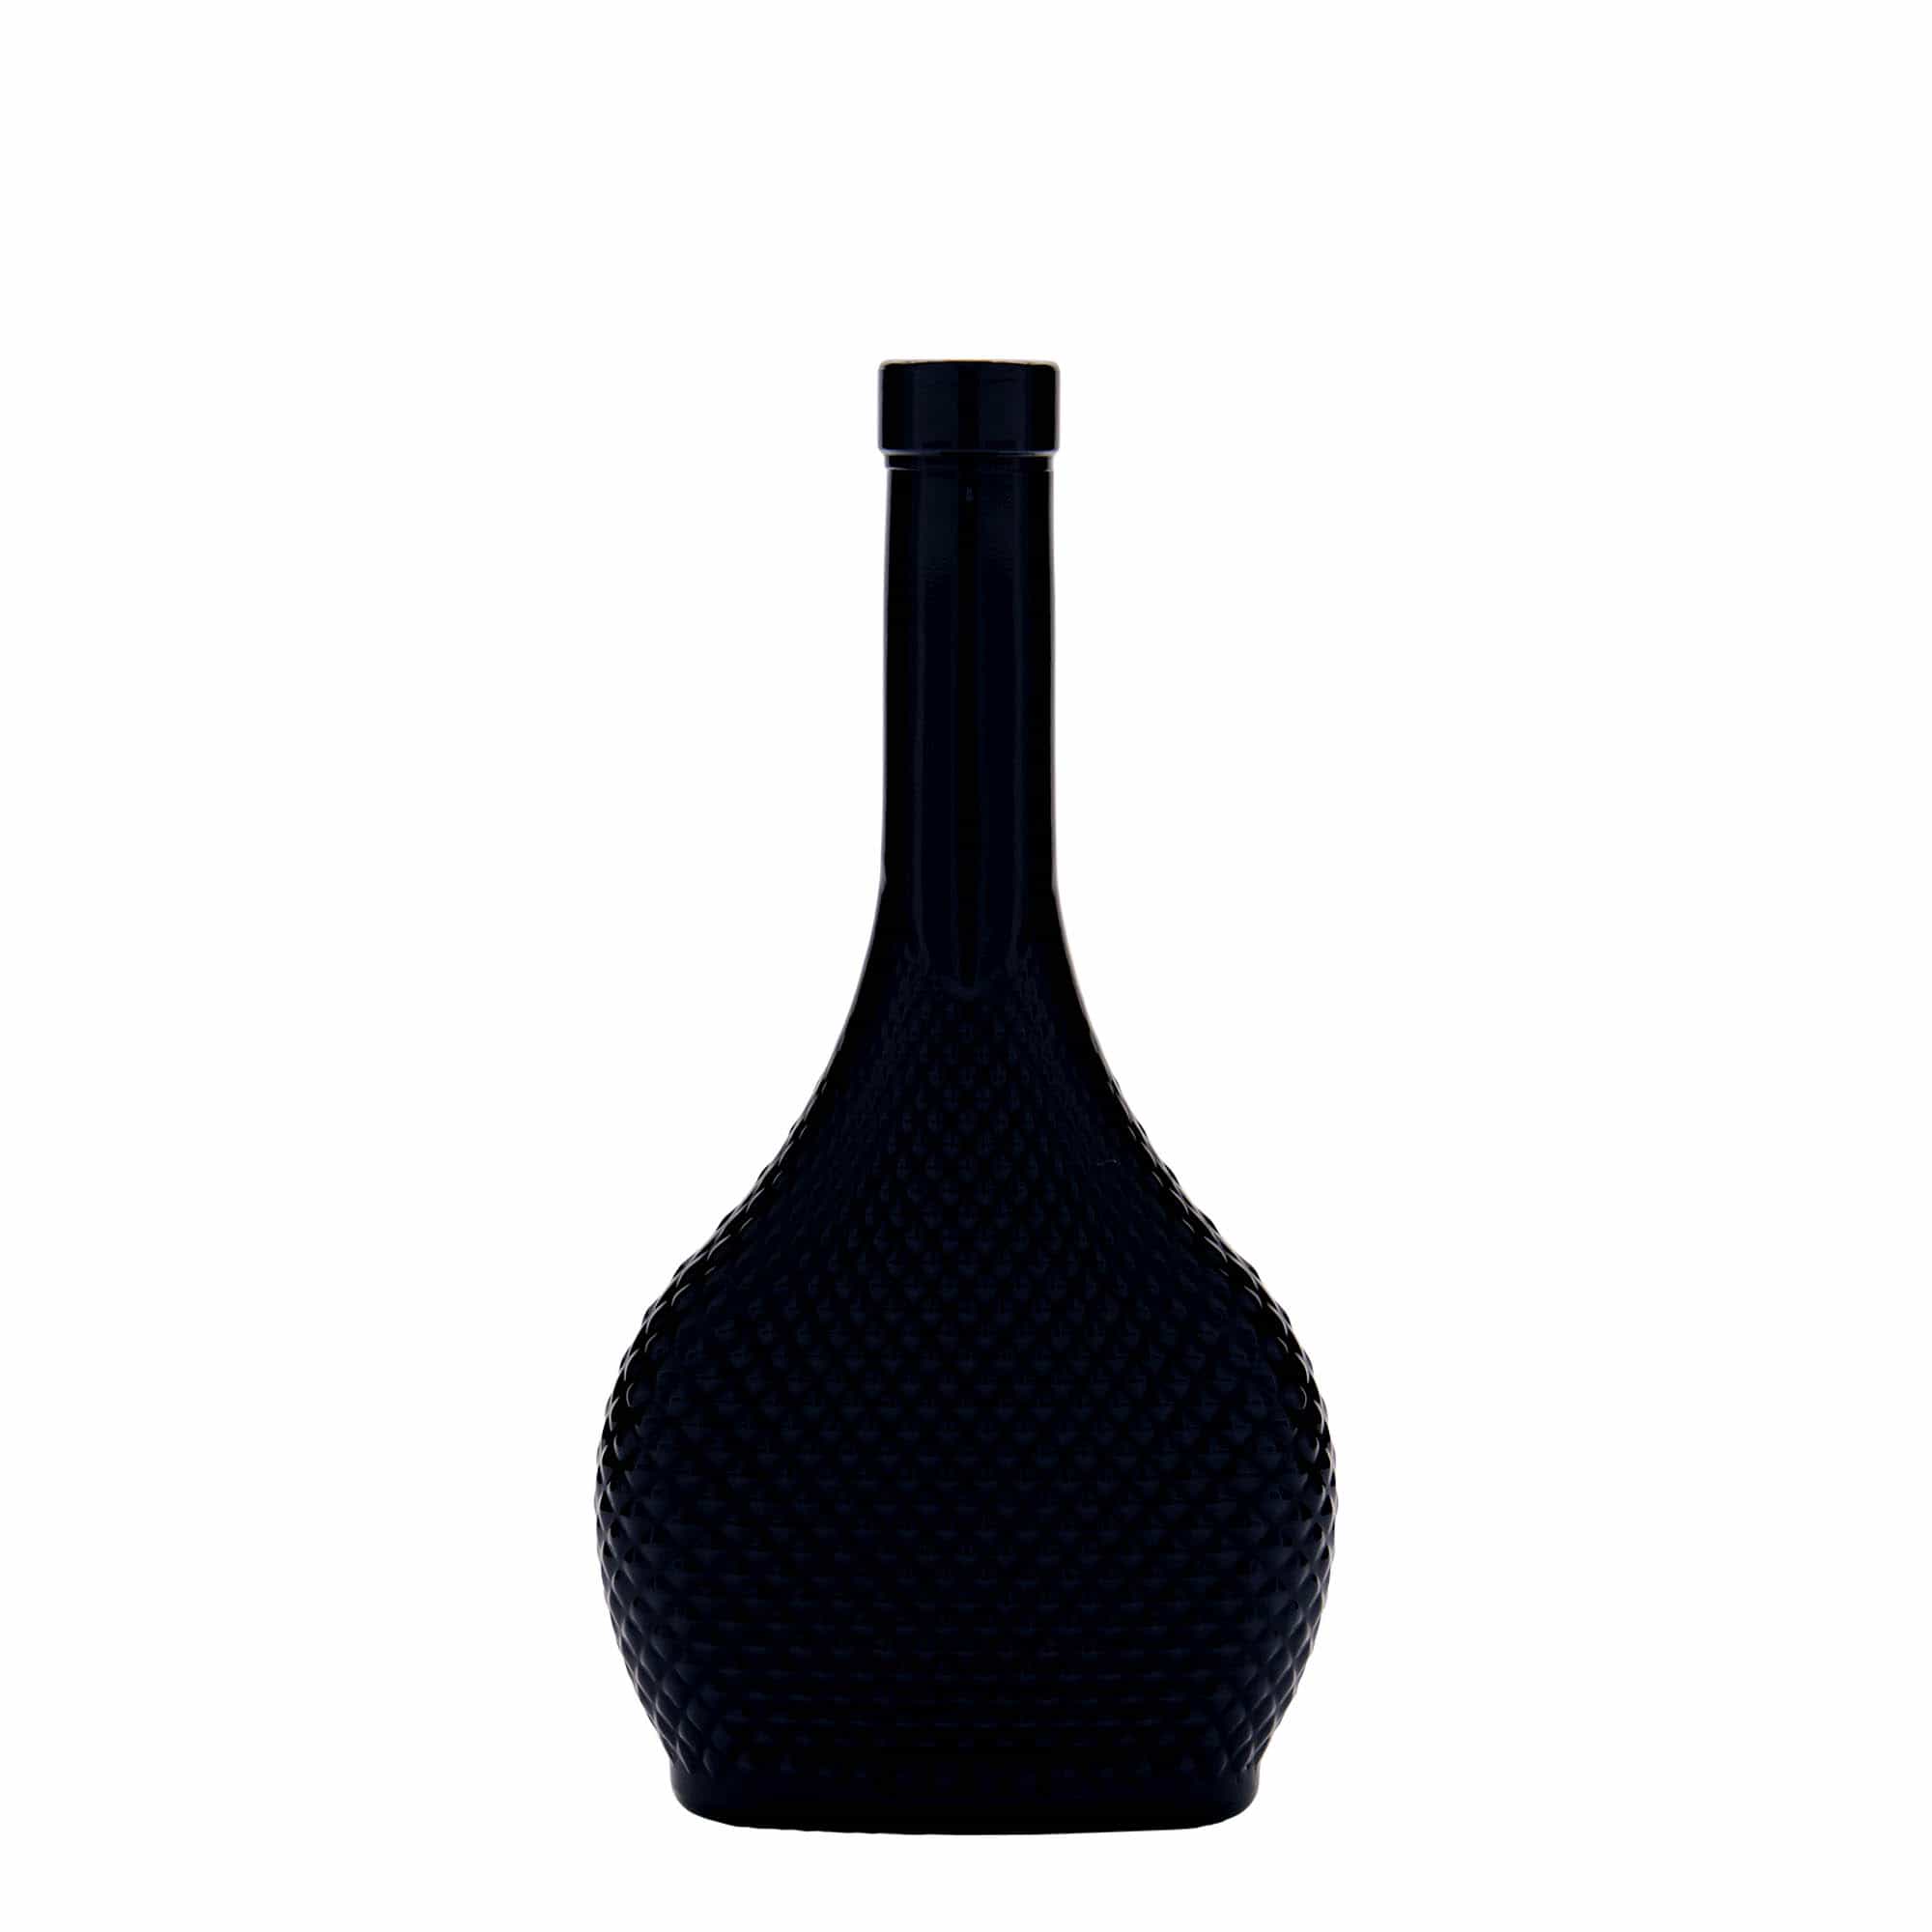 200 ml glass bottle 'Contessa Diamante', oval, black, closure: cork